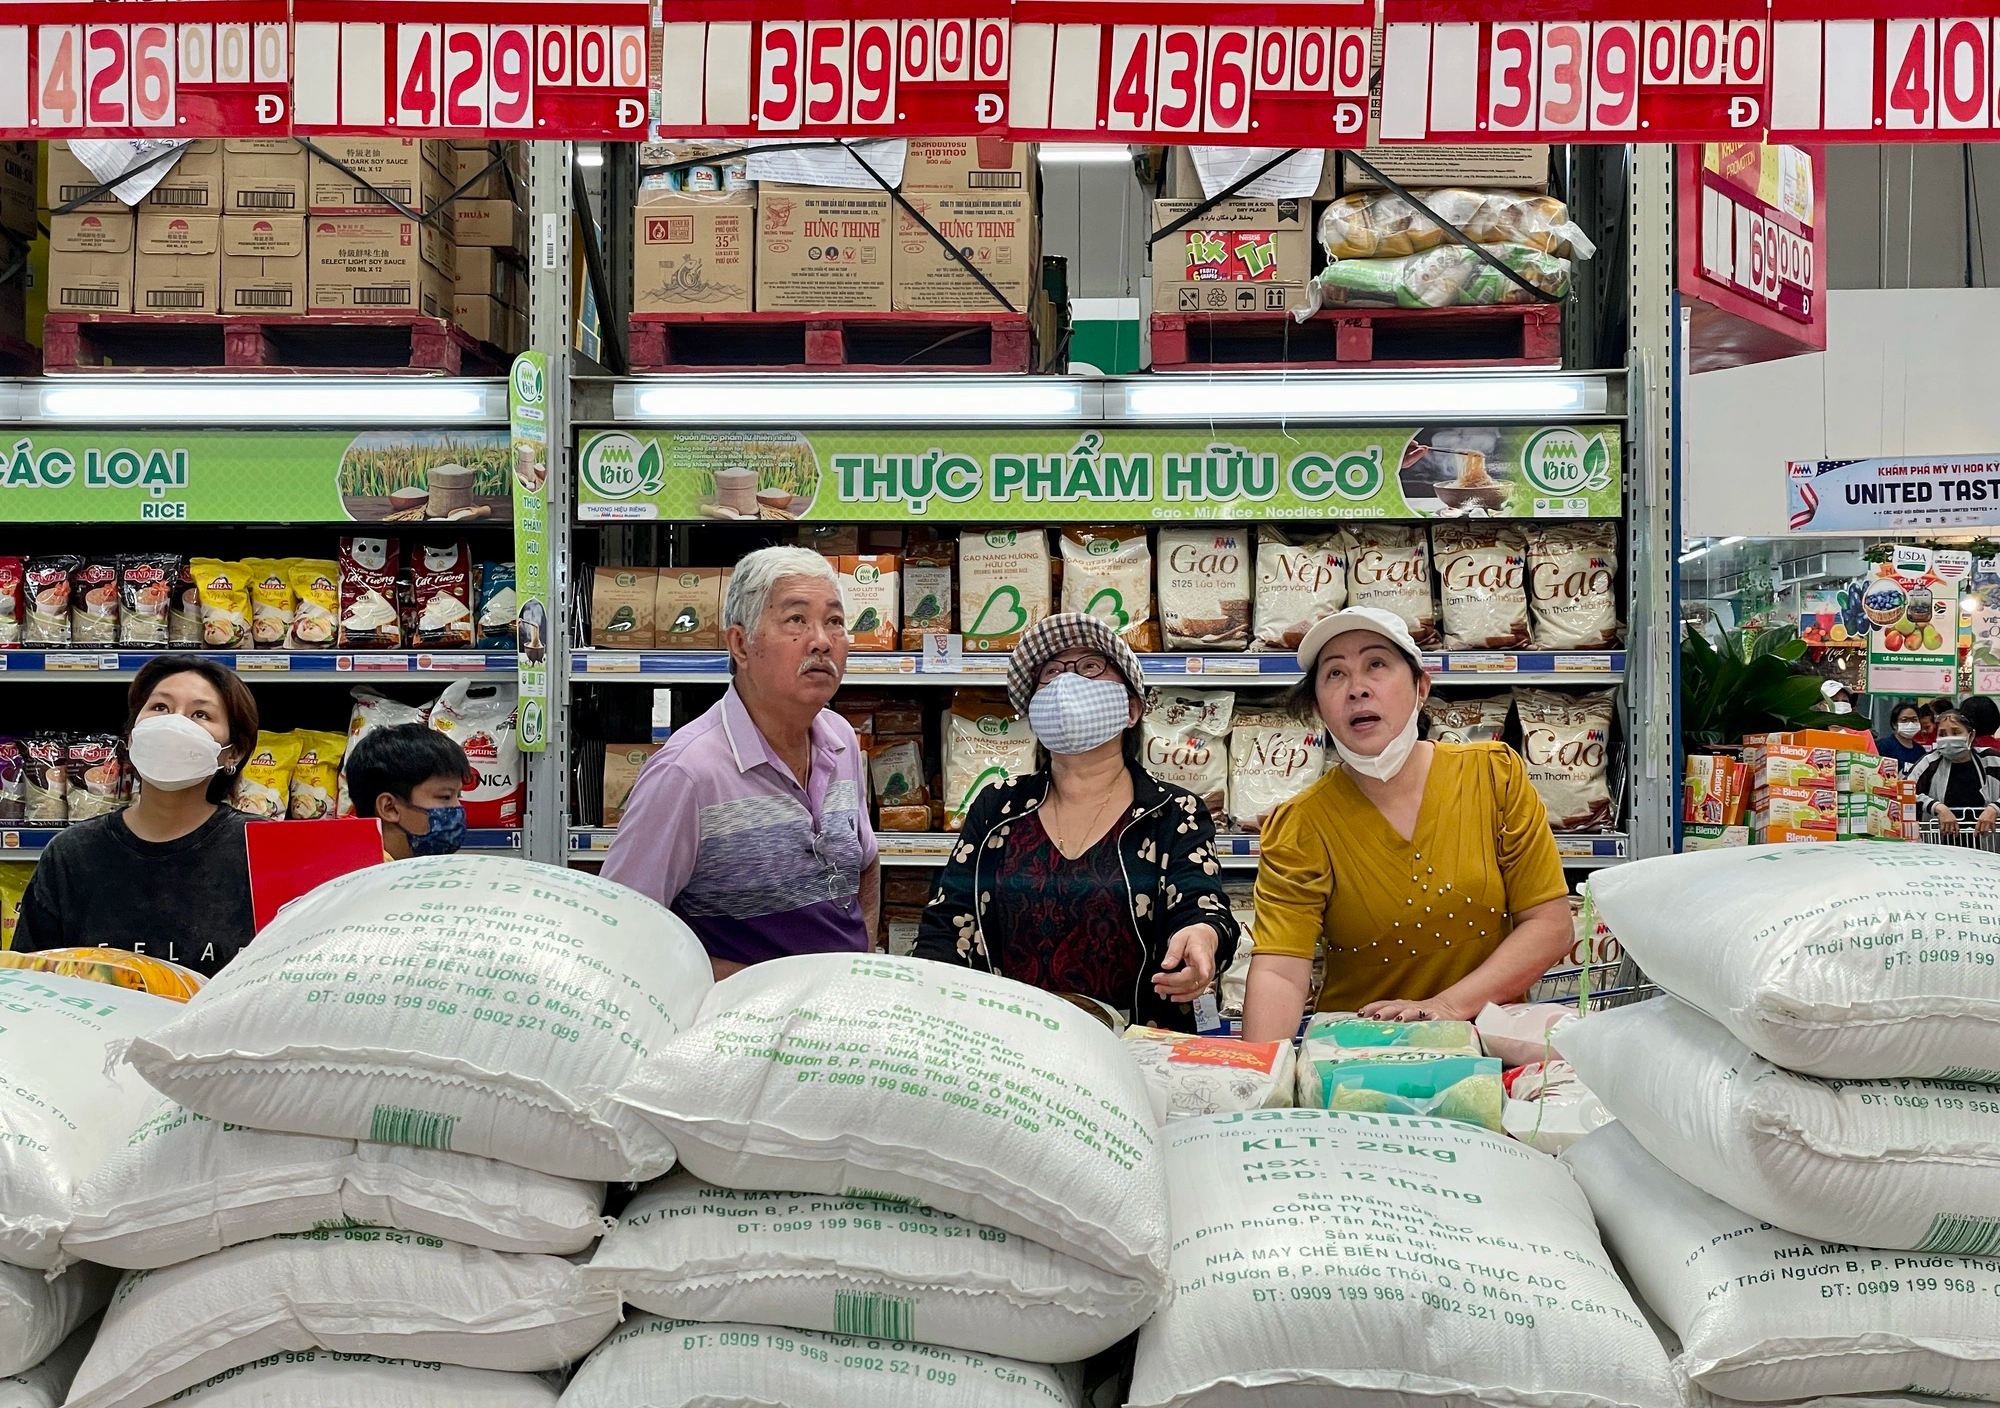 Lo lắng vì giá gạo bán lẻ trong nước cao kỷ lục - Ảnh 2.